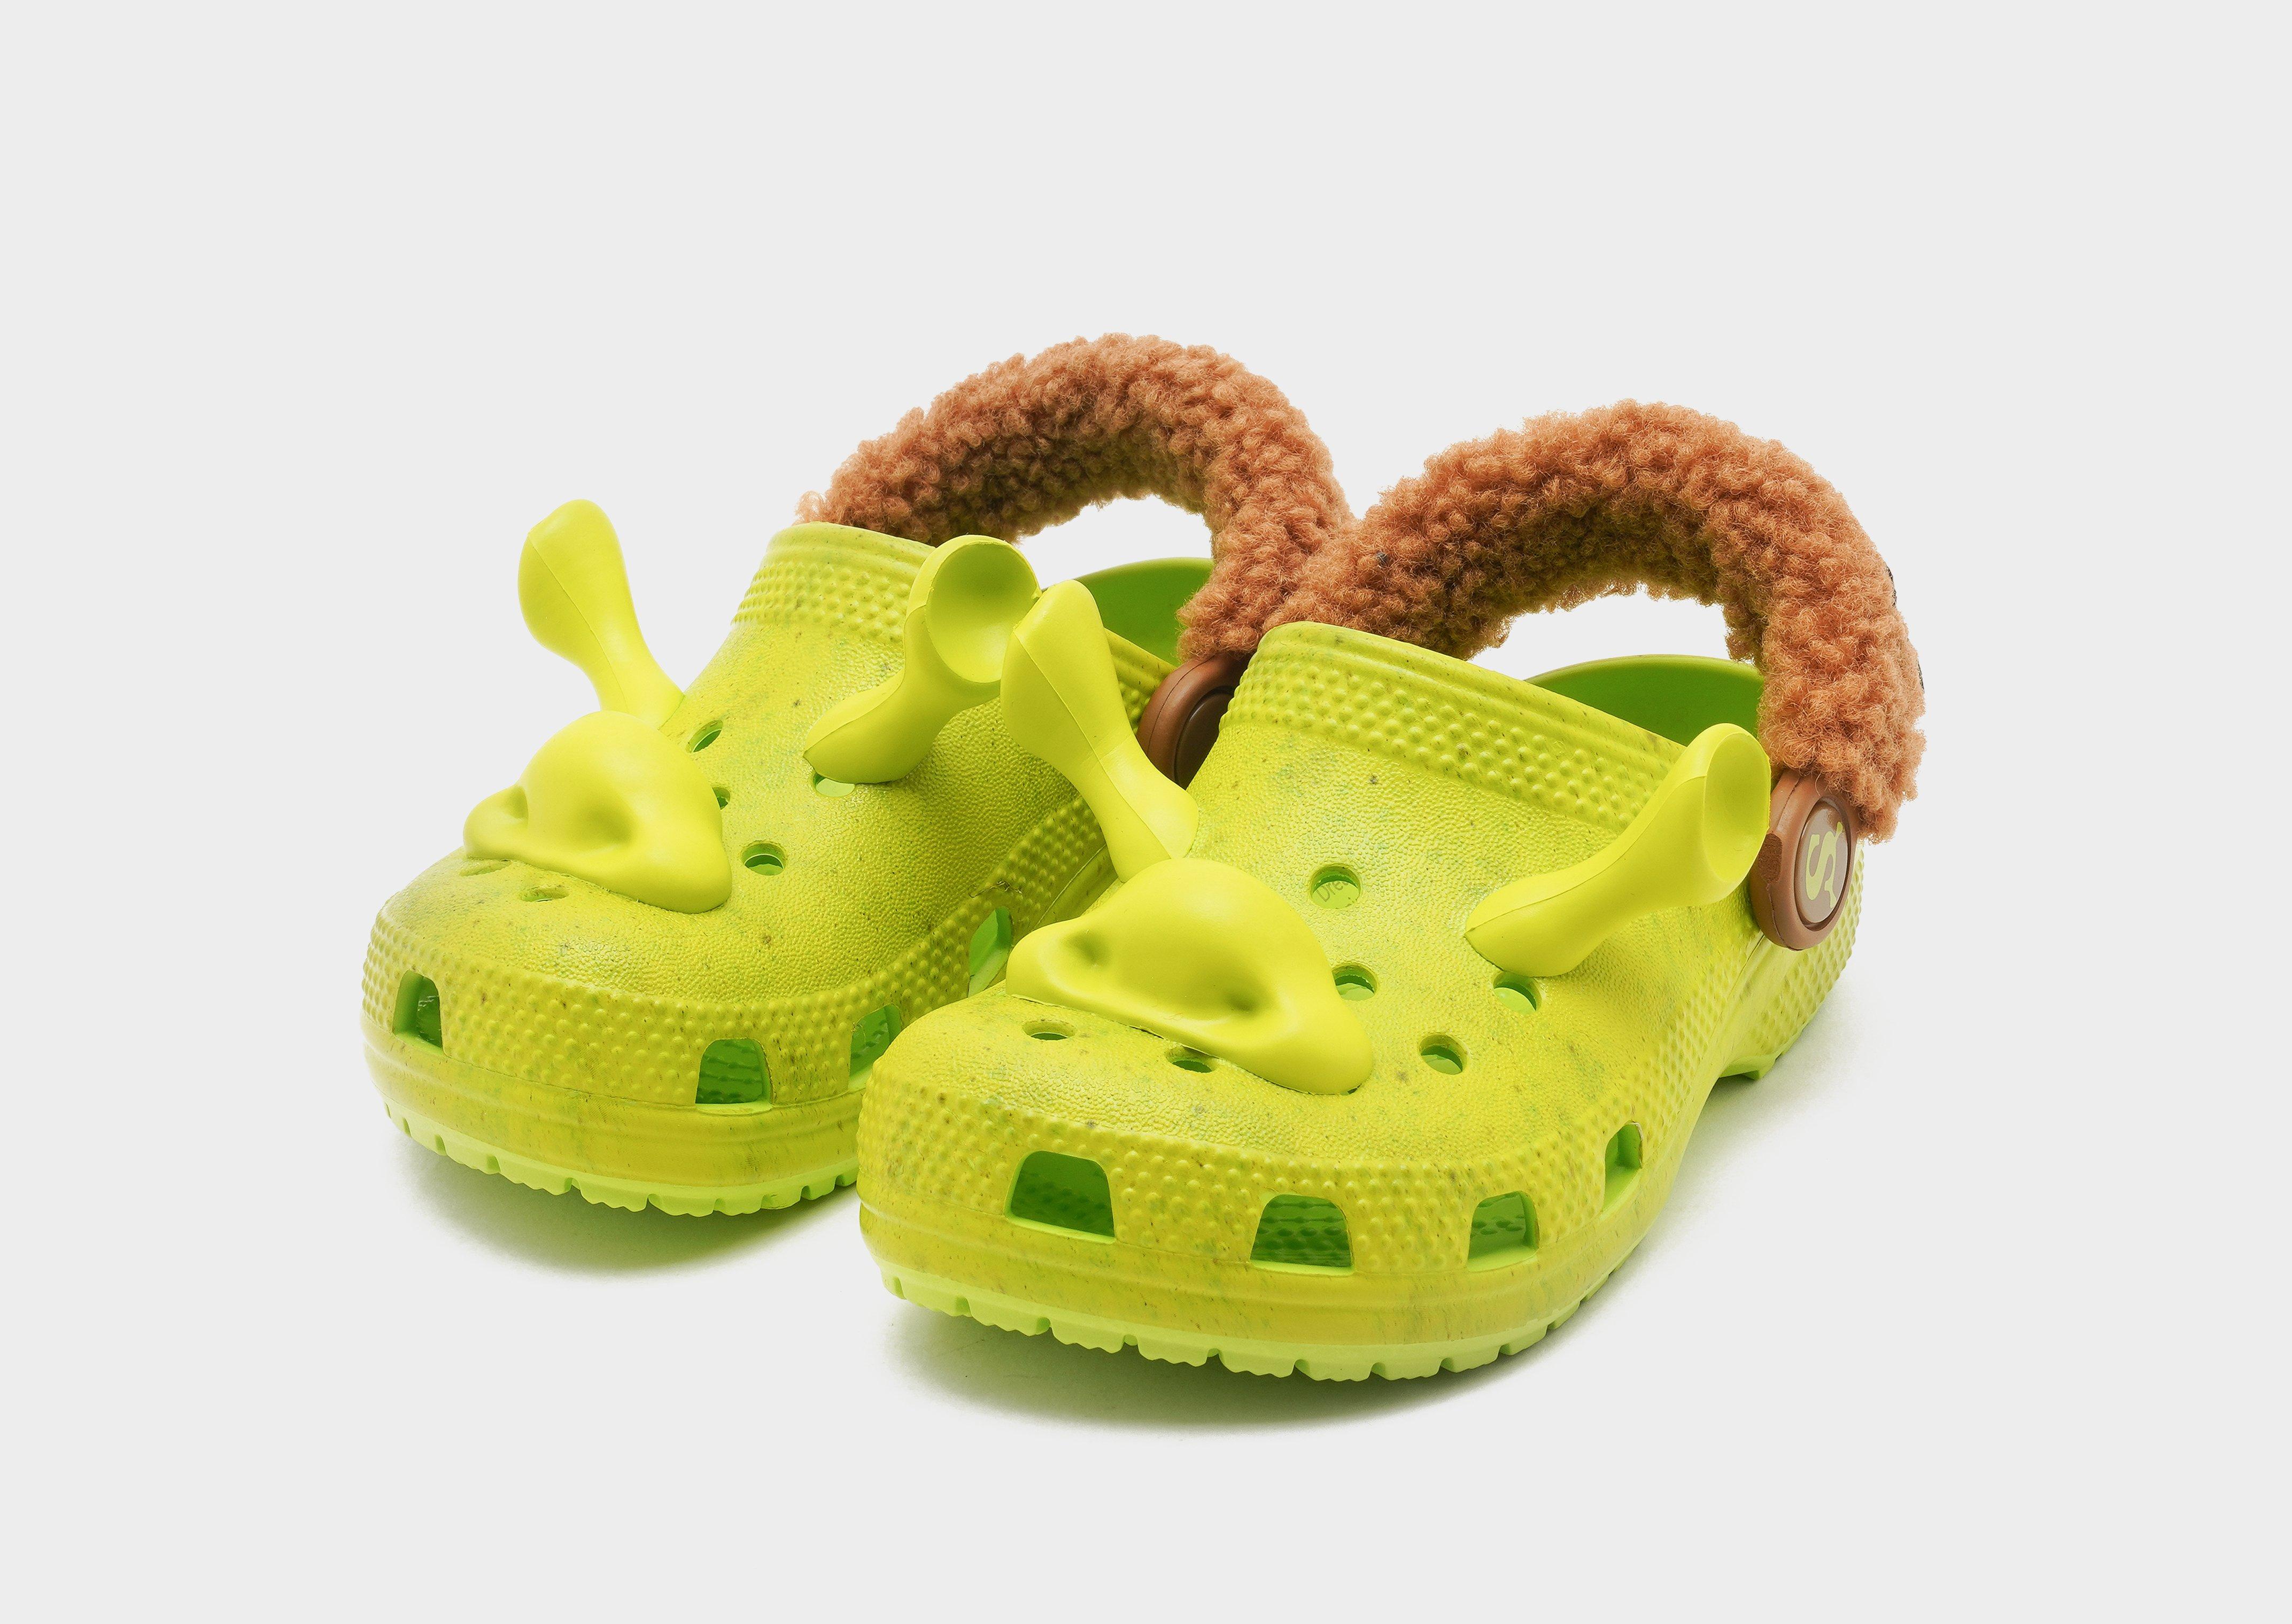 Classic Dreamworks Shrek Clog C13 Kid's Crocs With Bonus Shrek